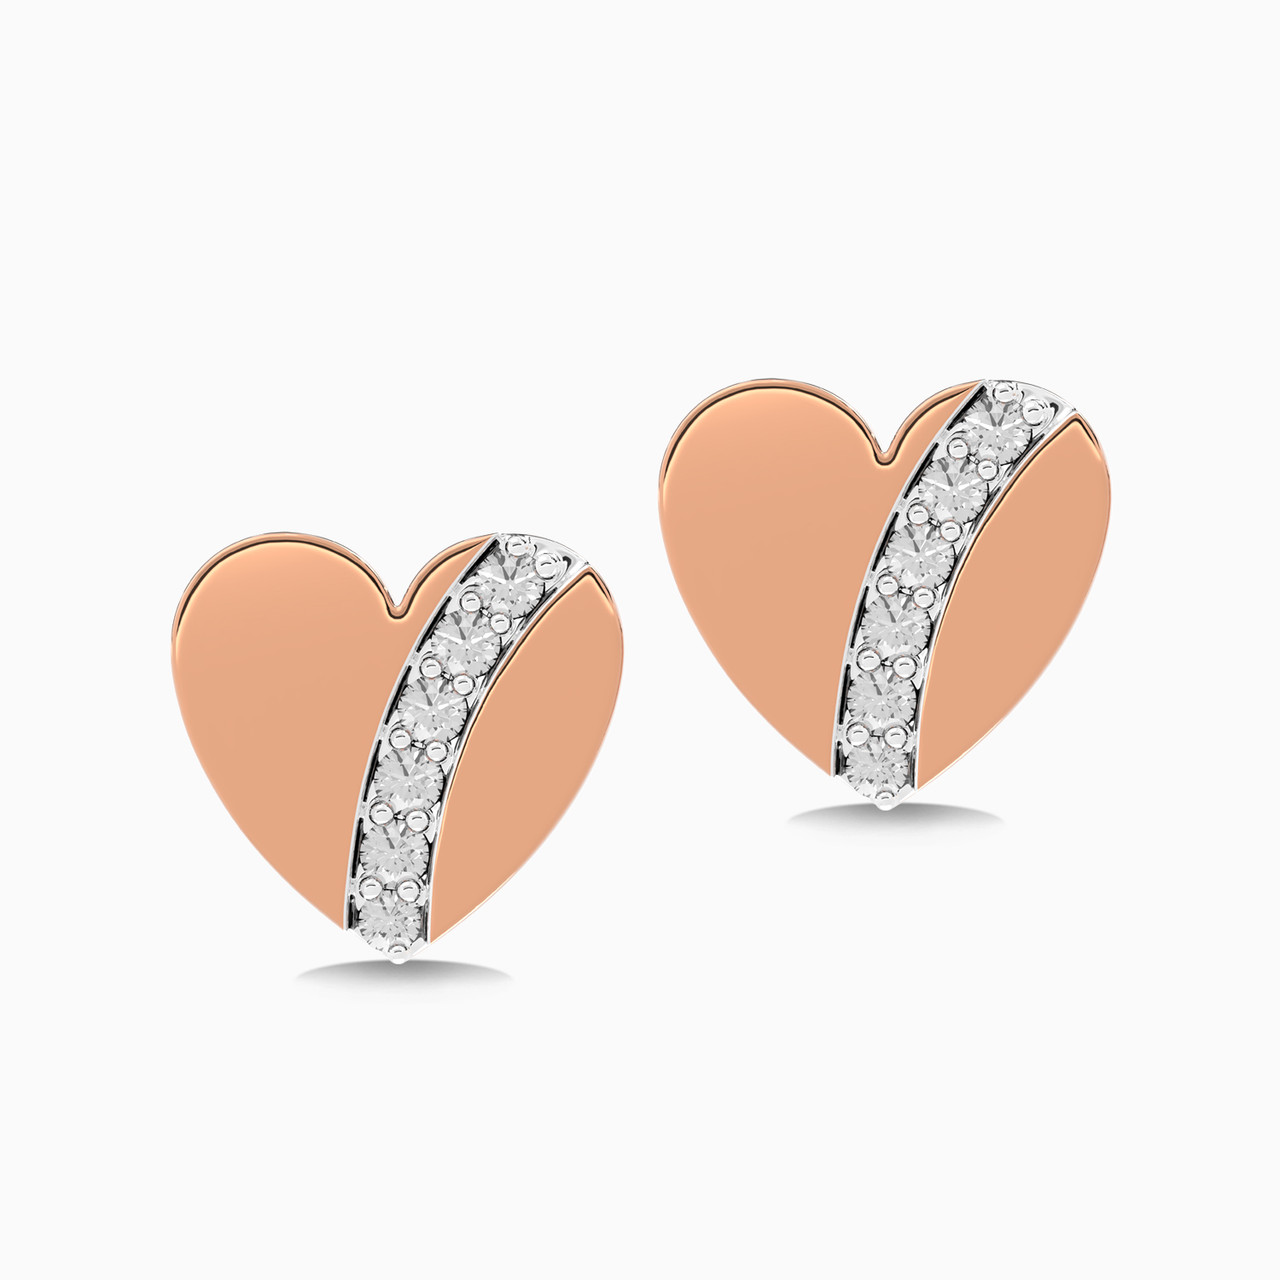 Heart Shaped Diamond Kids Stud Earrings in 18K Gold